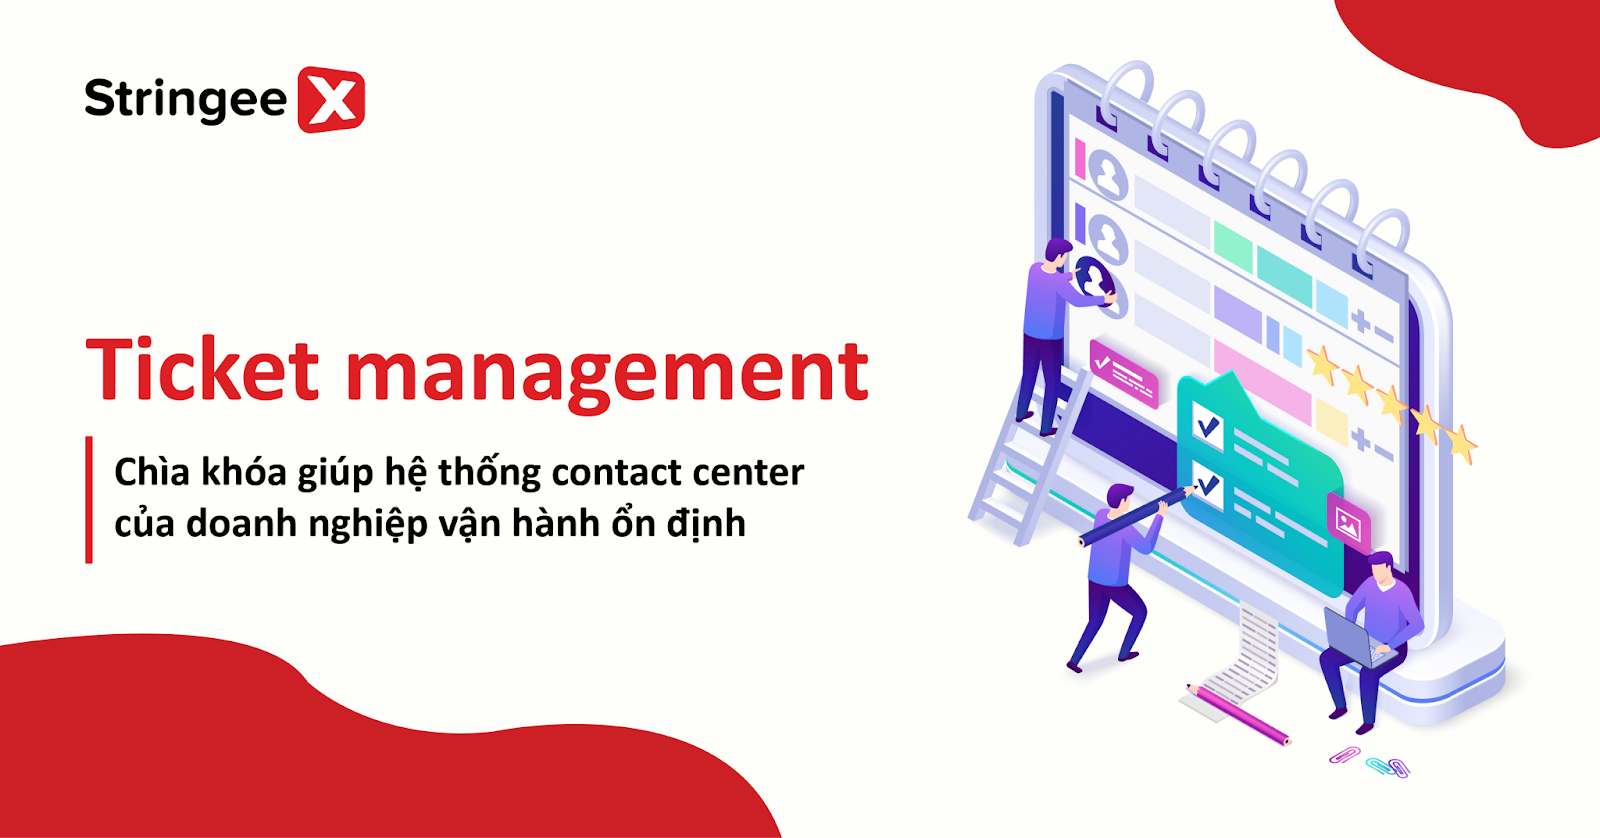 Ticket management - chìa khóa giúp hệ thống contact center của doanh nghiệp vận hành ổn định